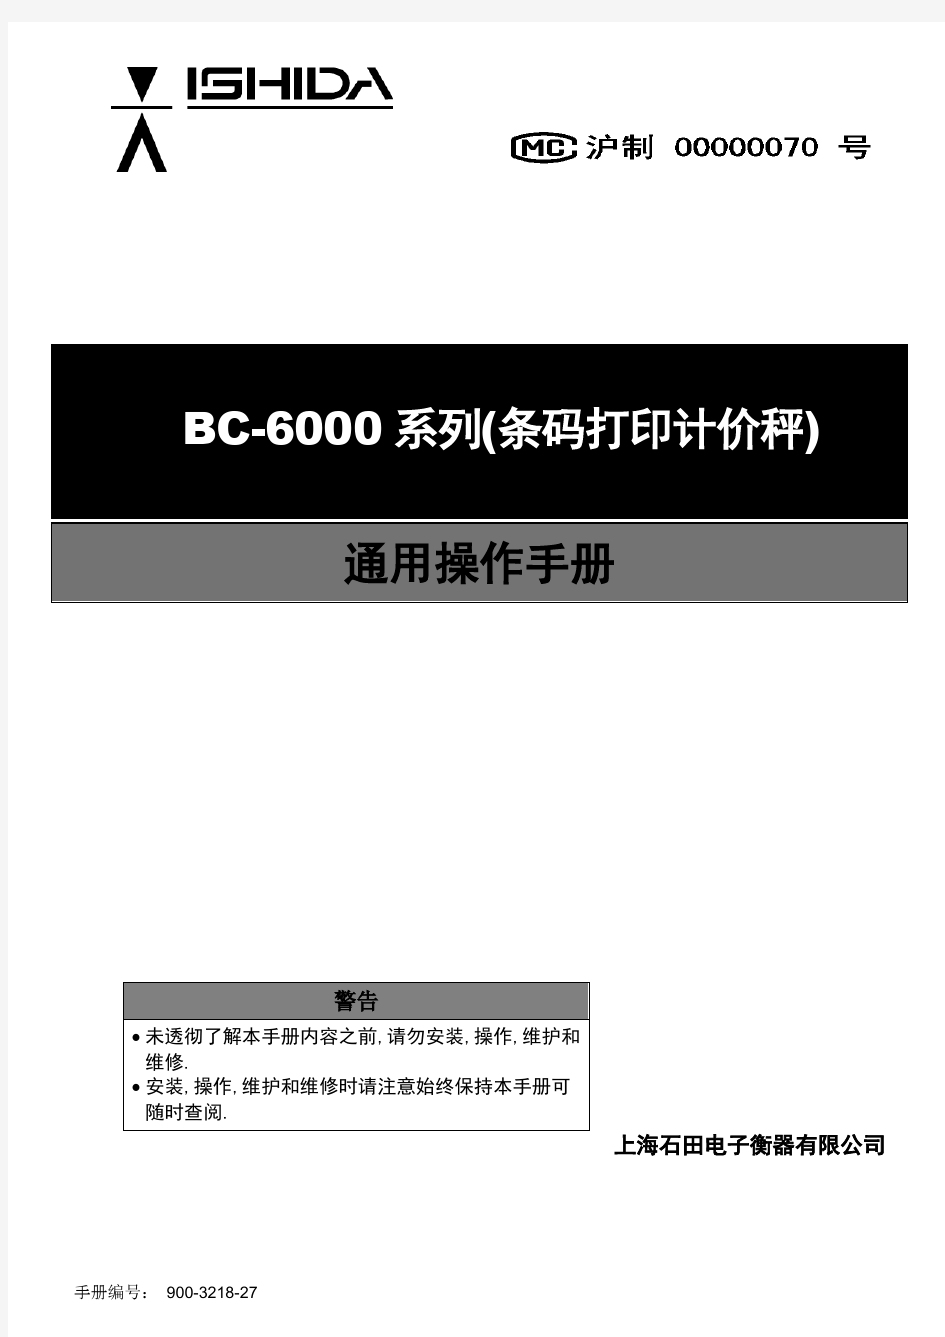 石田电子称 BC-6000系列中文版简明操作员手册